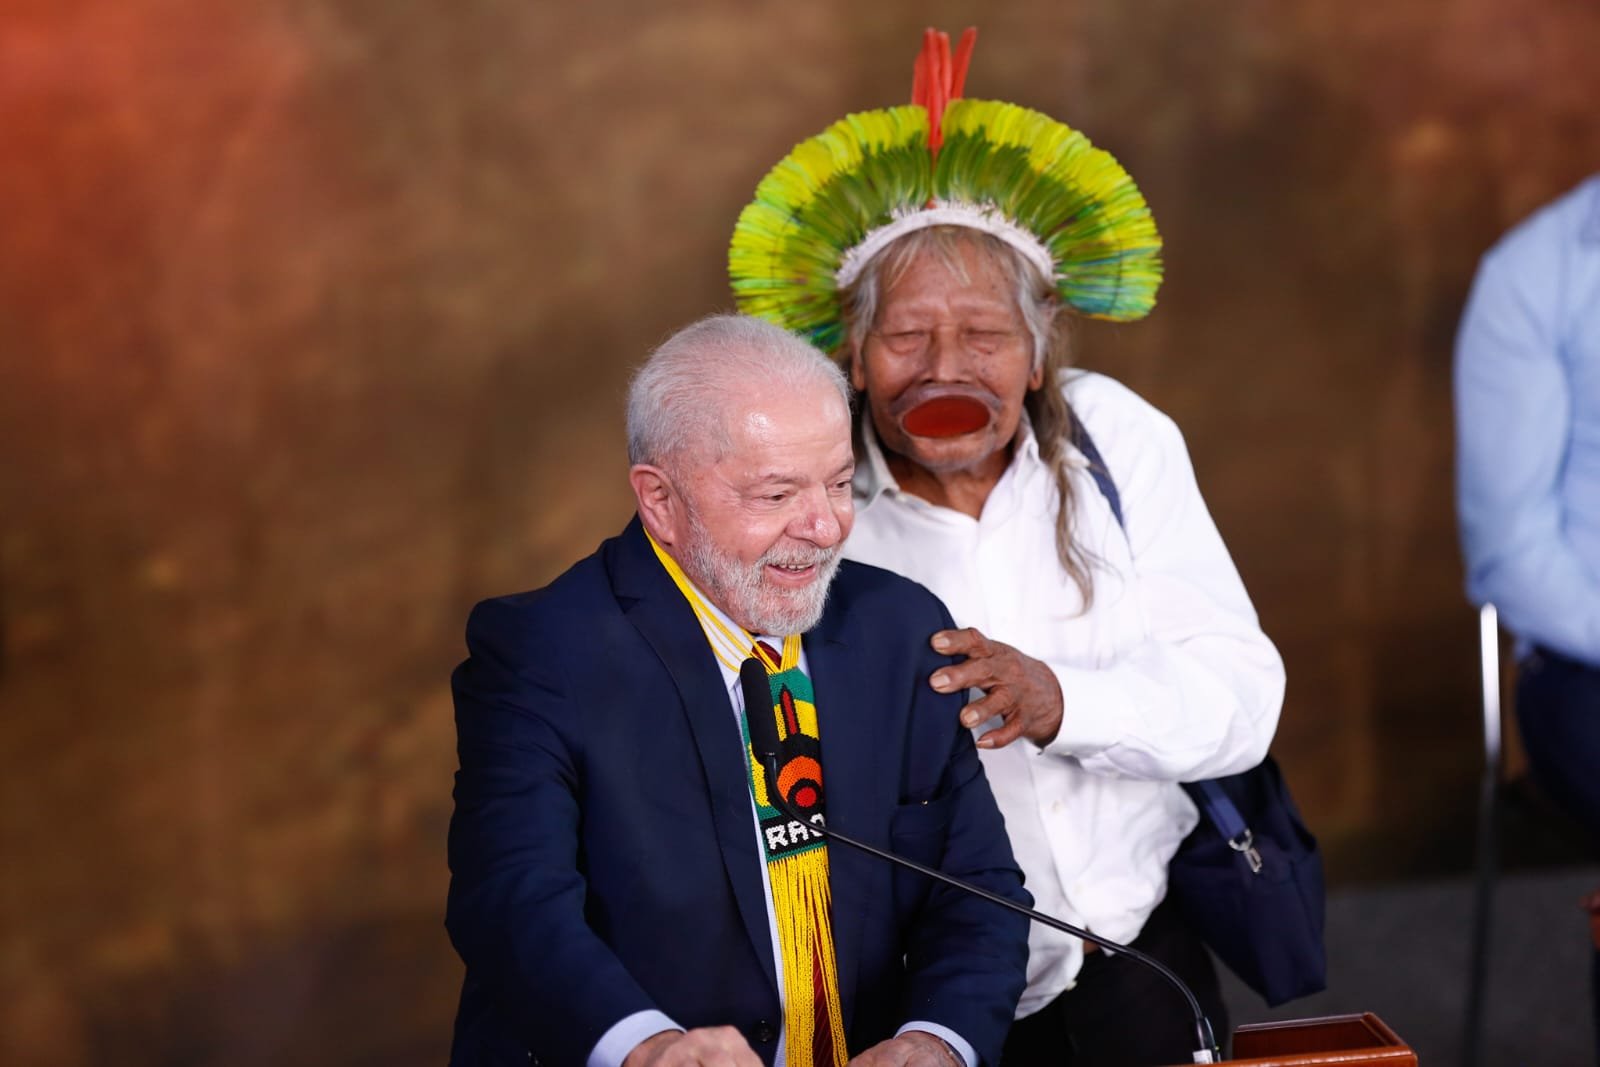 Ministros de Lula irão participar do “Chamado de Raoni” em MT